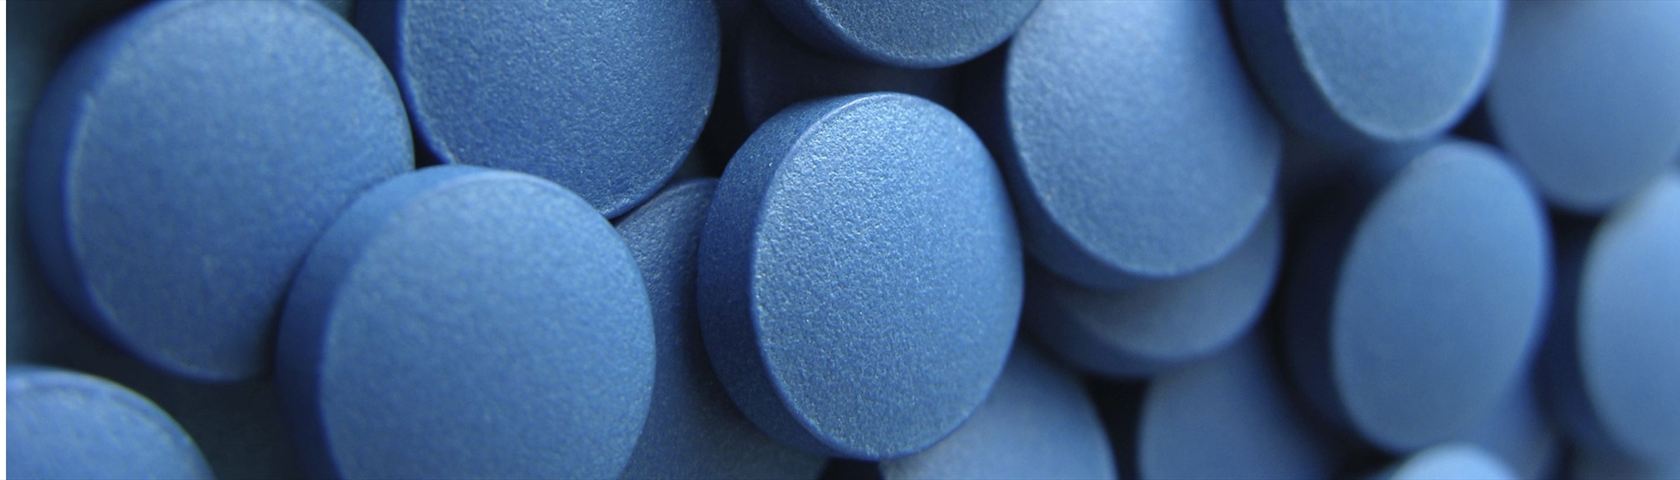 Blue Pills